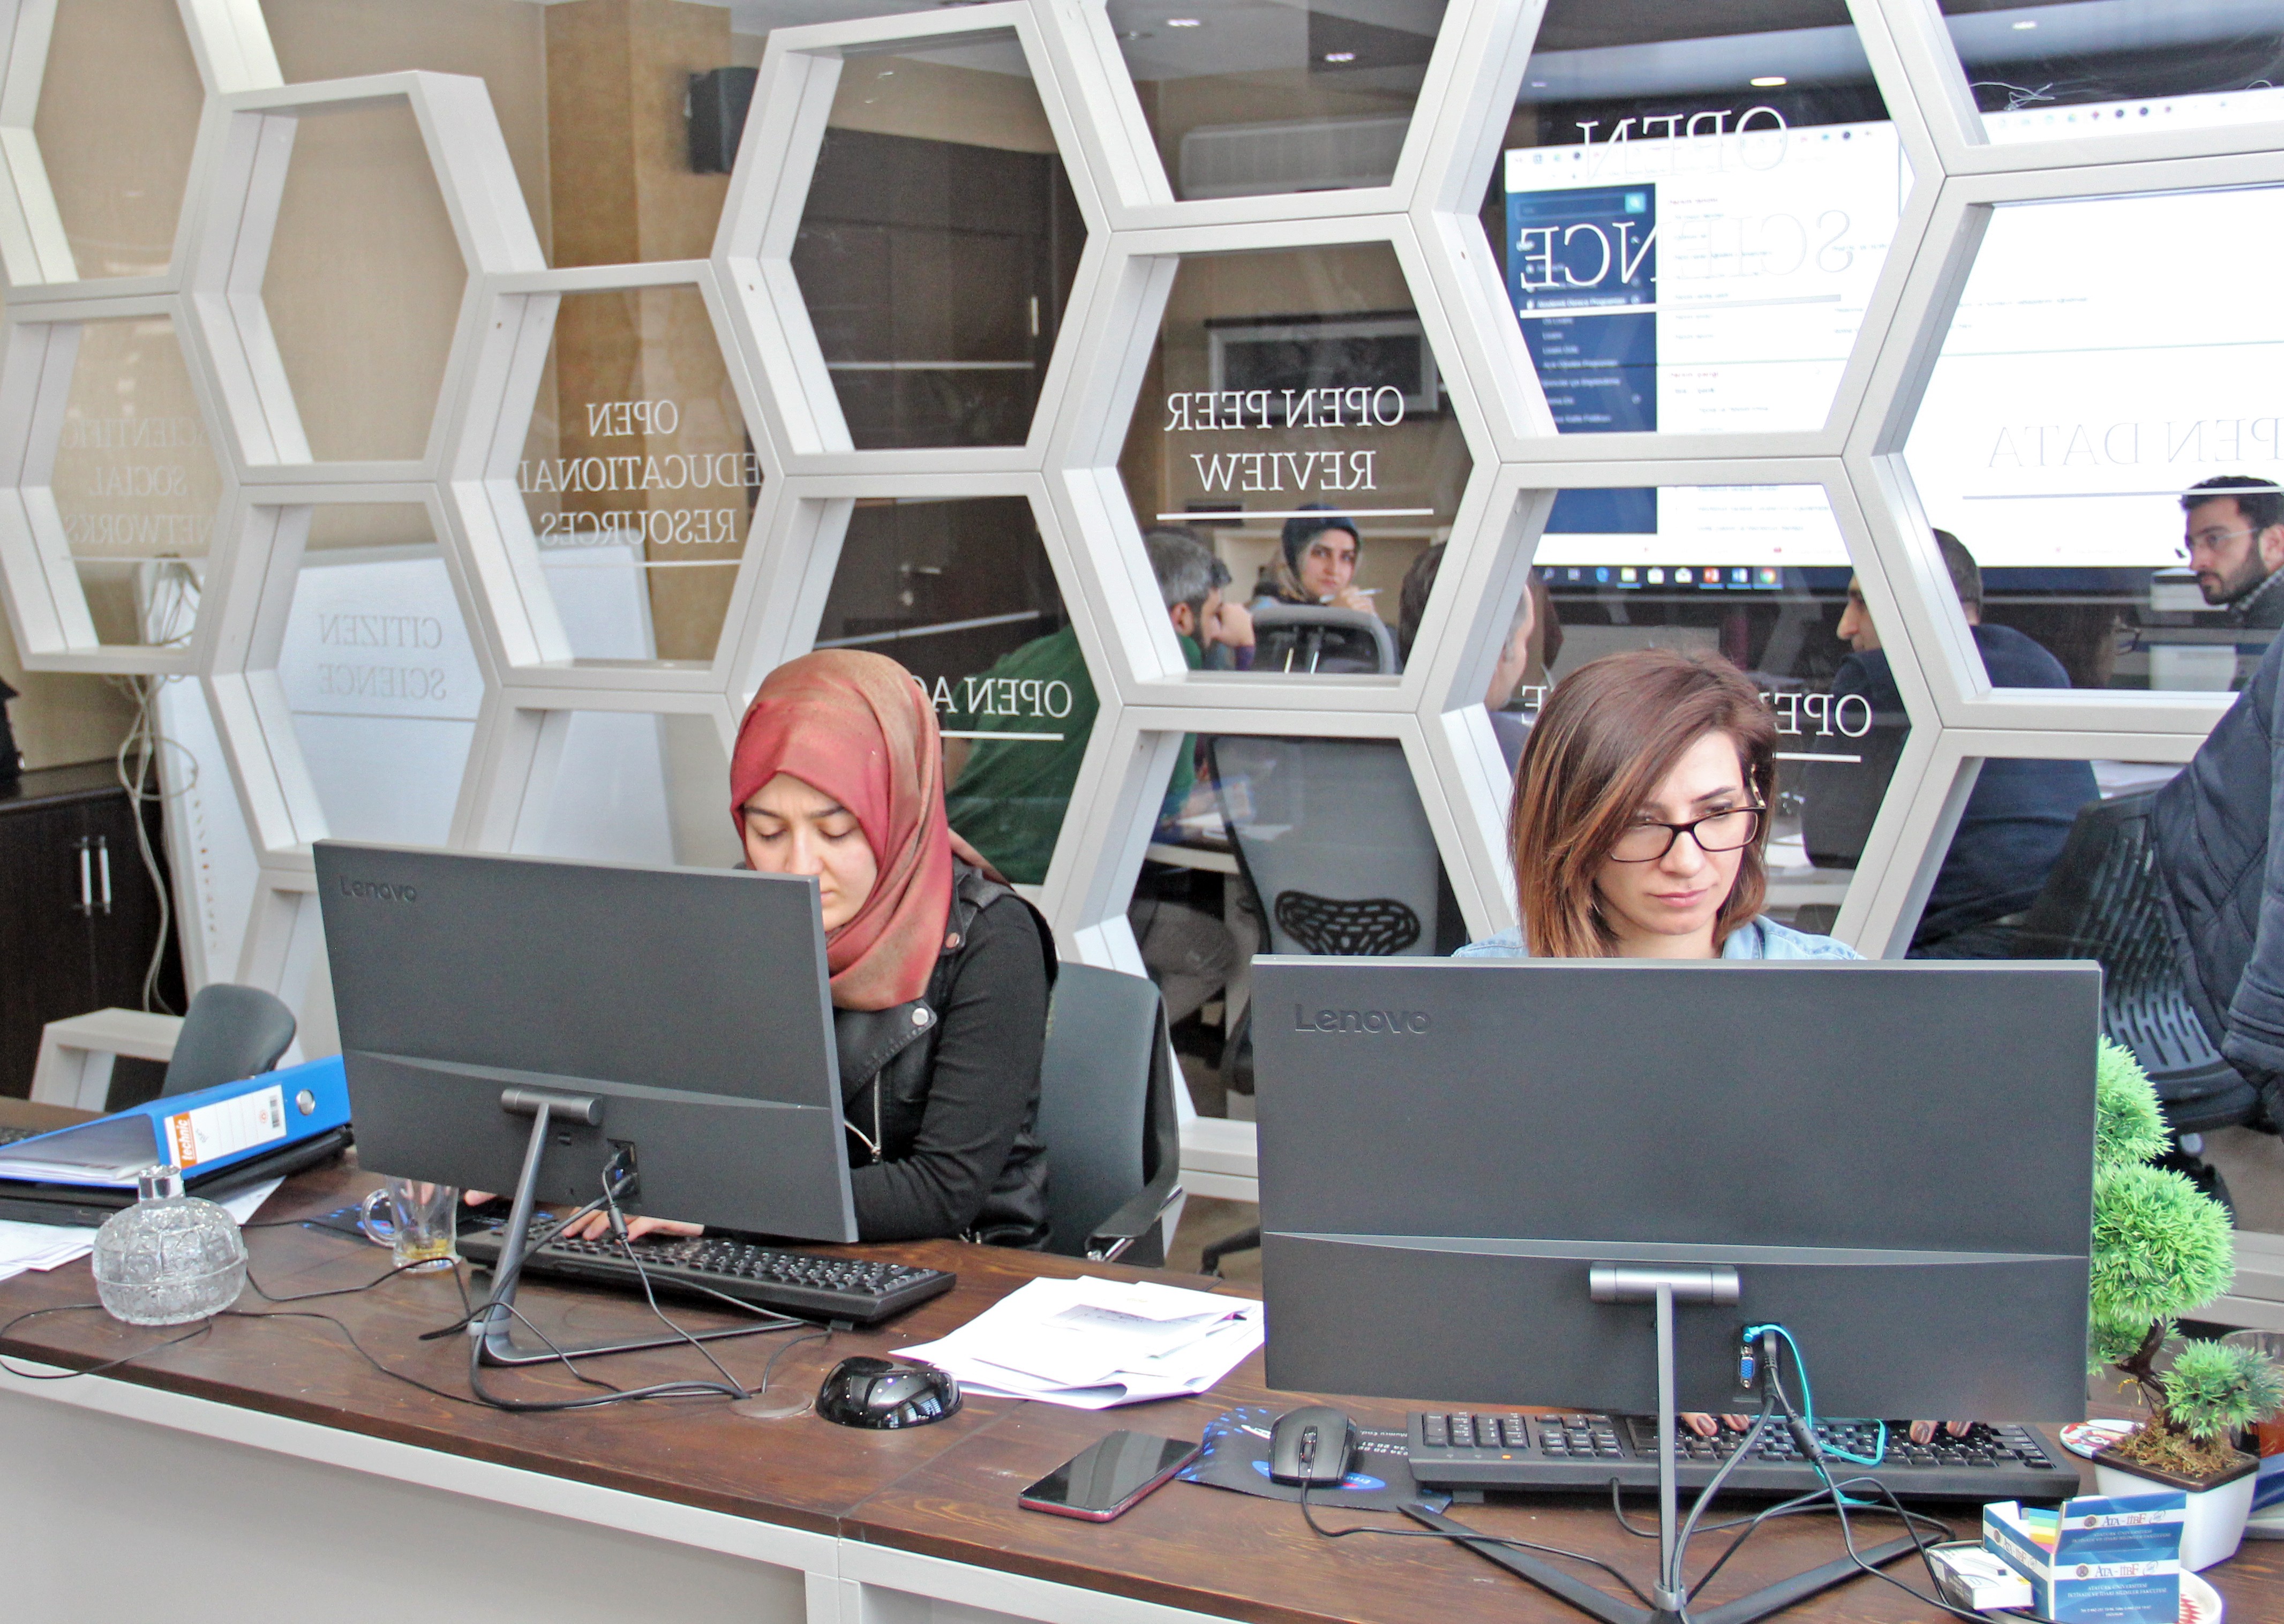 Atatürk Üniversitesinde Dijital Dönüşüm başlıyor